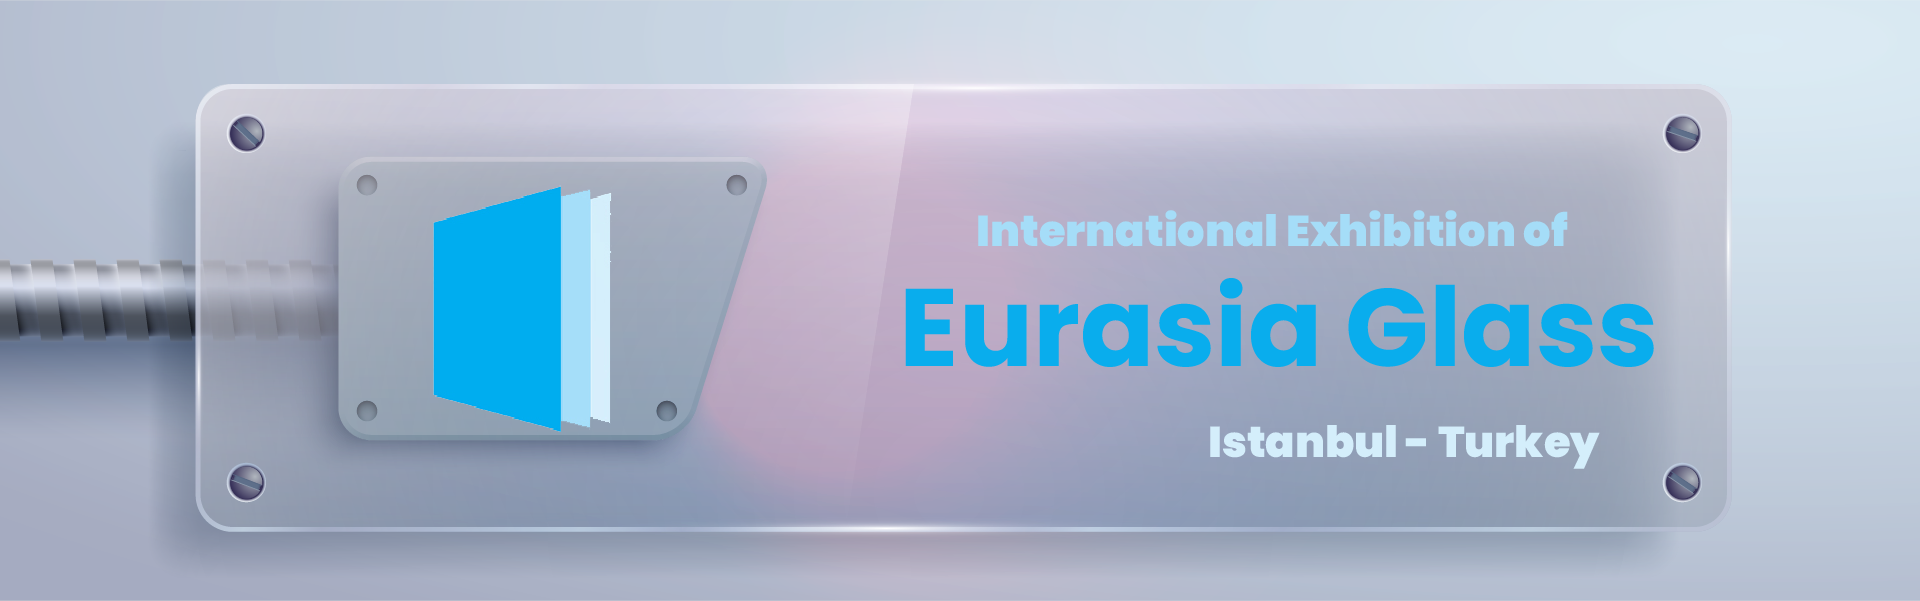 Eurasia Glass Exhibition Istanbul Turkey